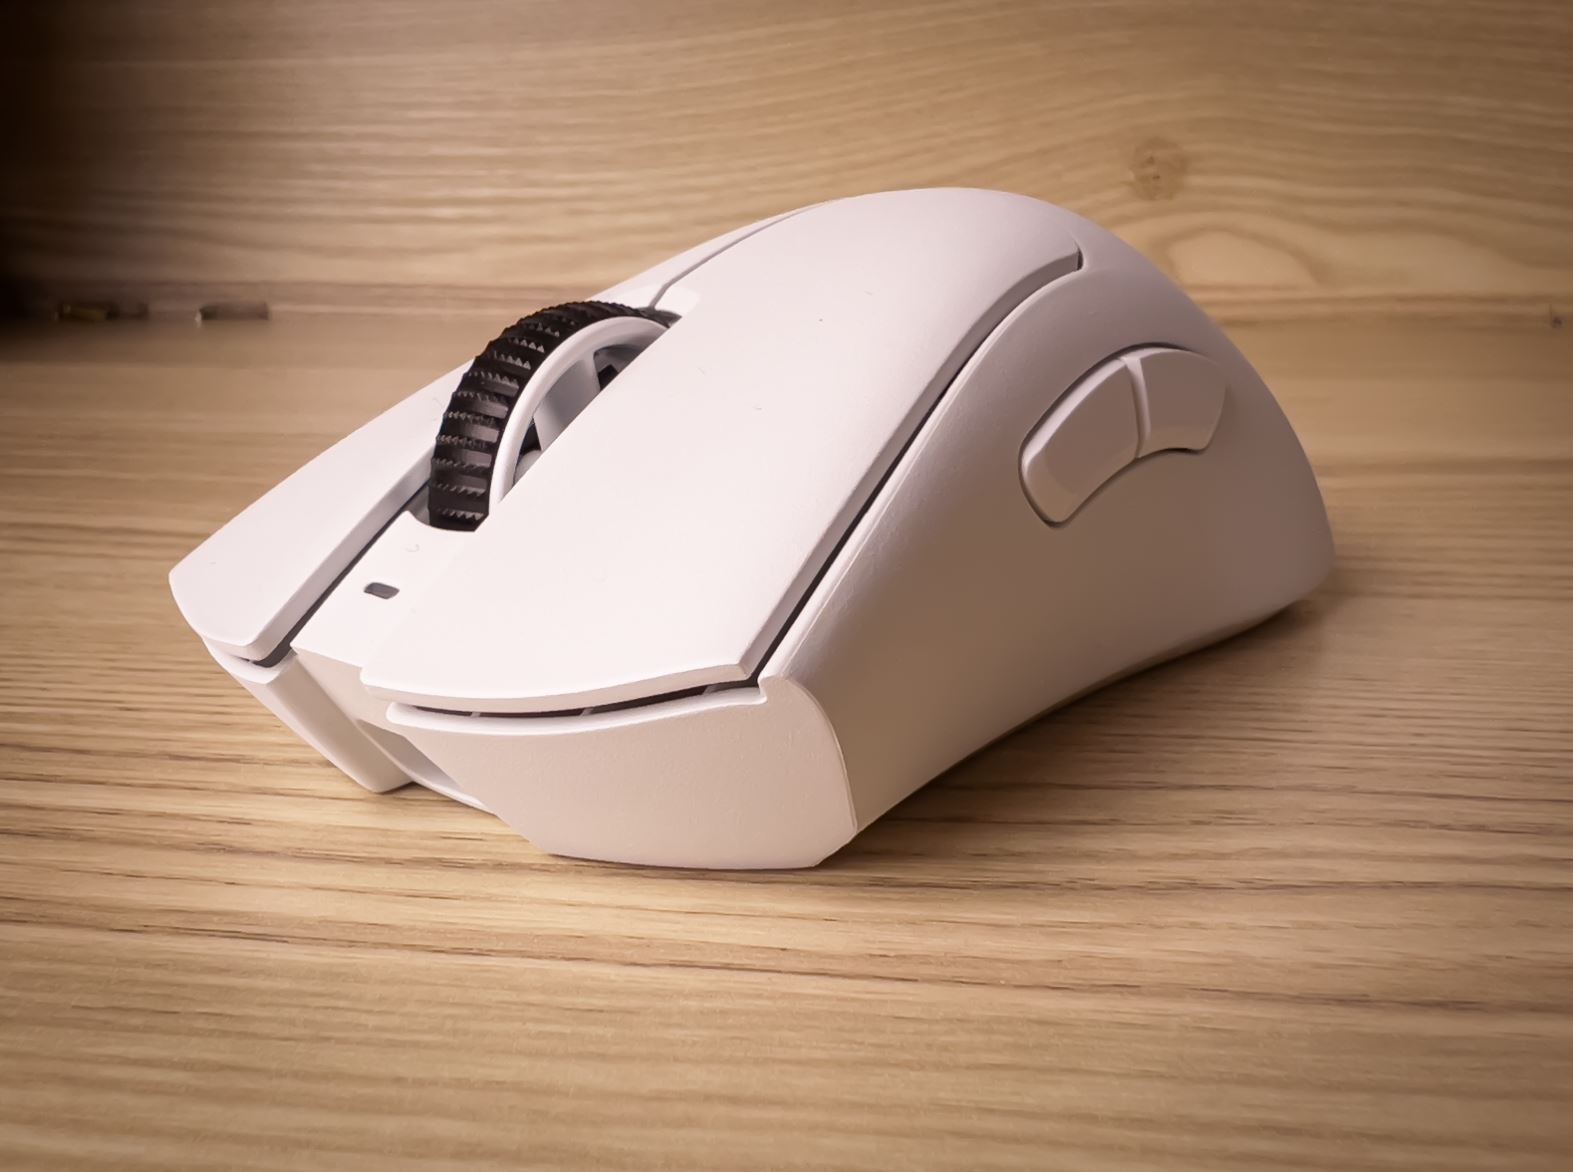 The World's Best Gaming Mouse (Now Mini) - Razer DeathAdder V2